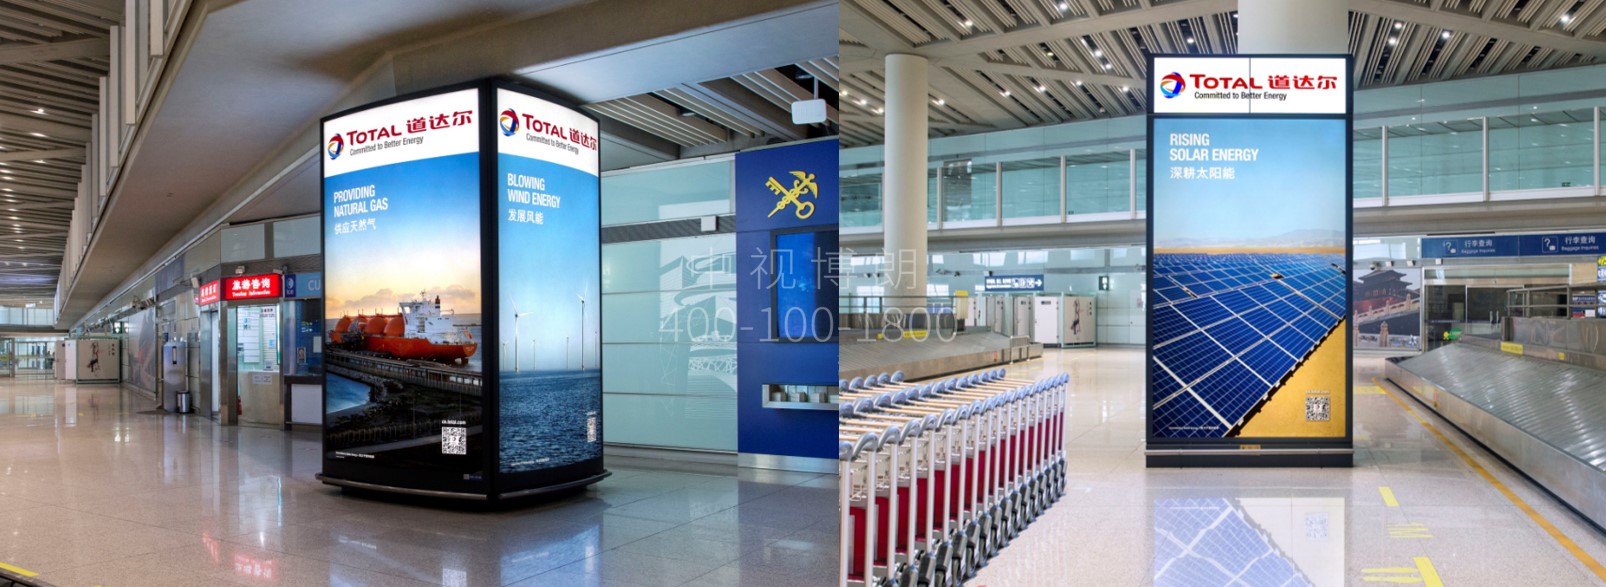 北京首都机场广告-T3到达行李厅LCD屏&灯箱套装